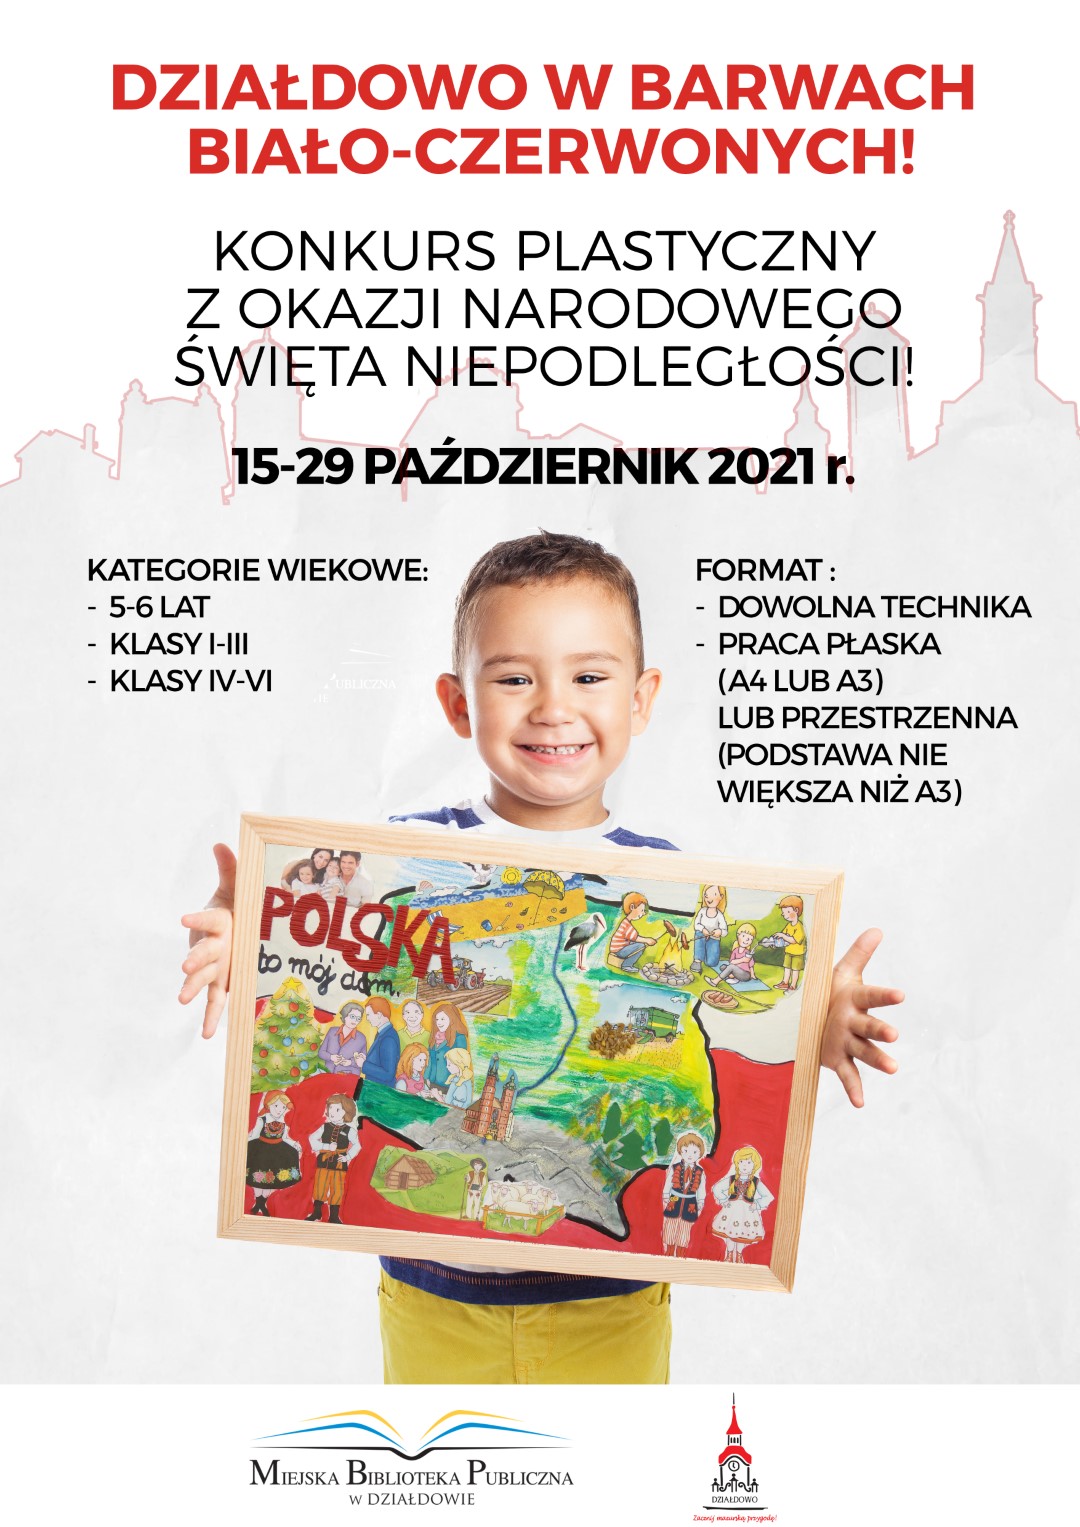 Plakat zaproszenie do wzięcia udziału w konkursie plastycznym zorganizowanym przez Miejską Bibliotekę Publiczną w Działdowie oraz Burmistrza Miasta Działdowa z okazji Narodowego Święta Niepodległości.